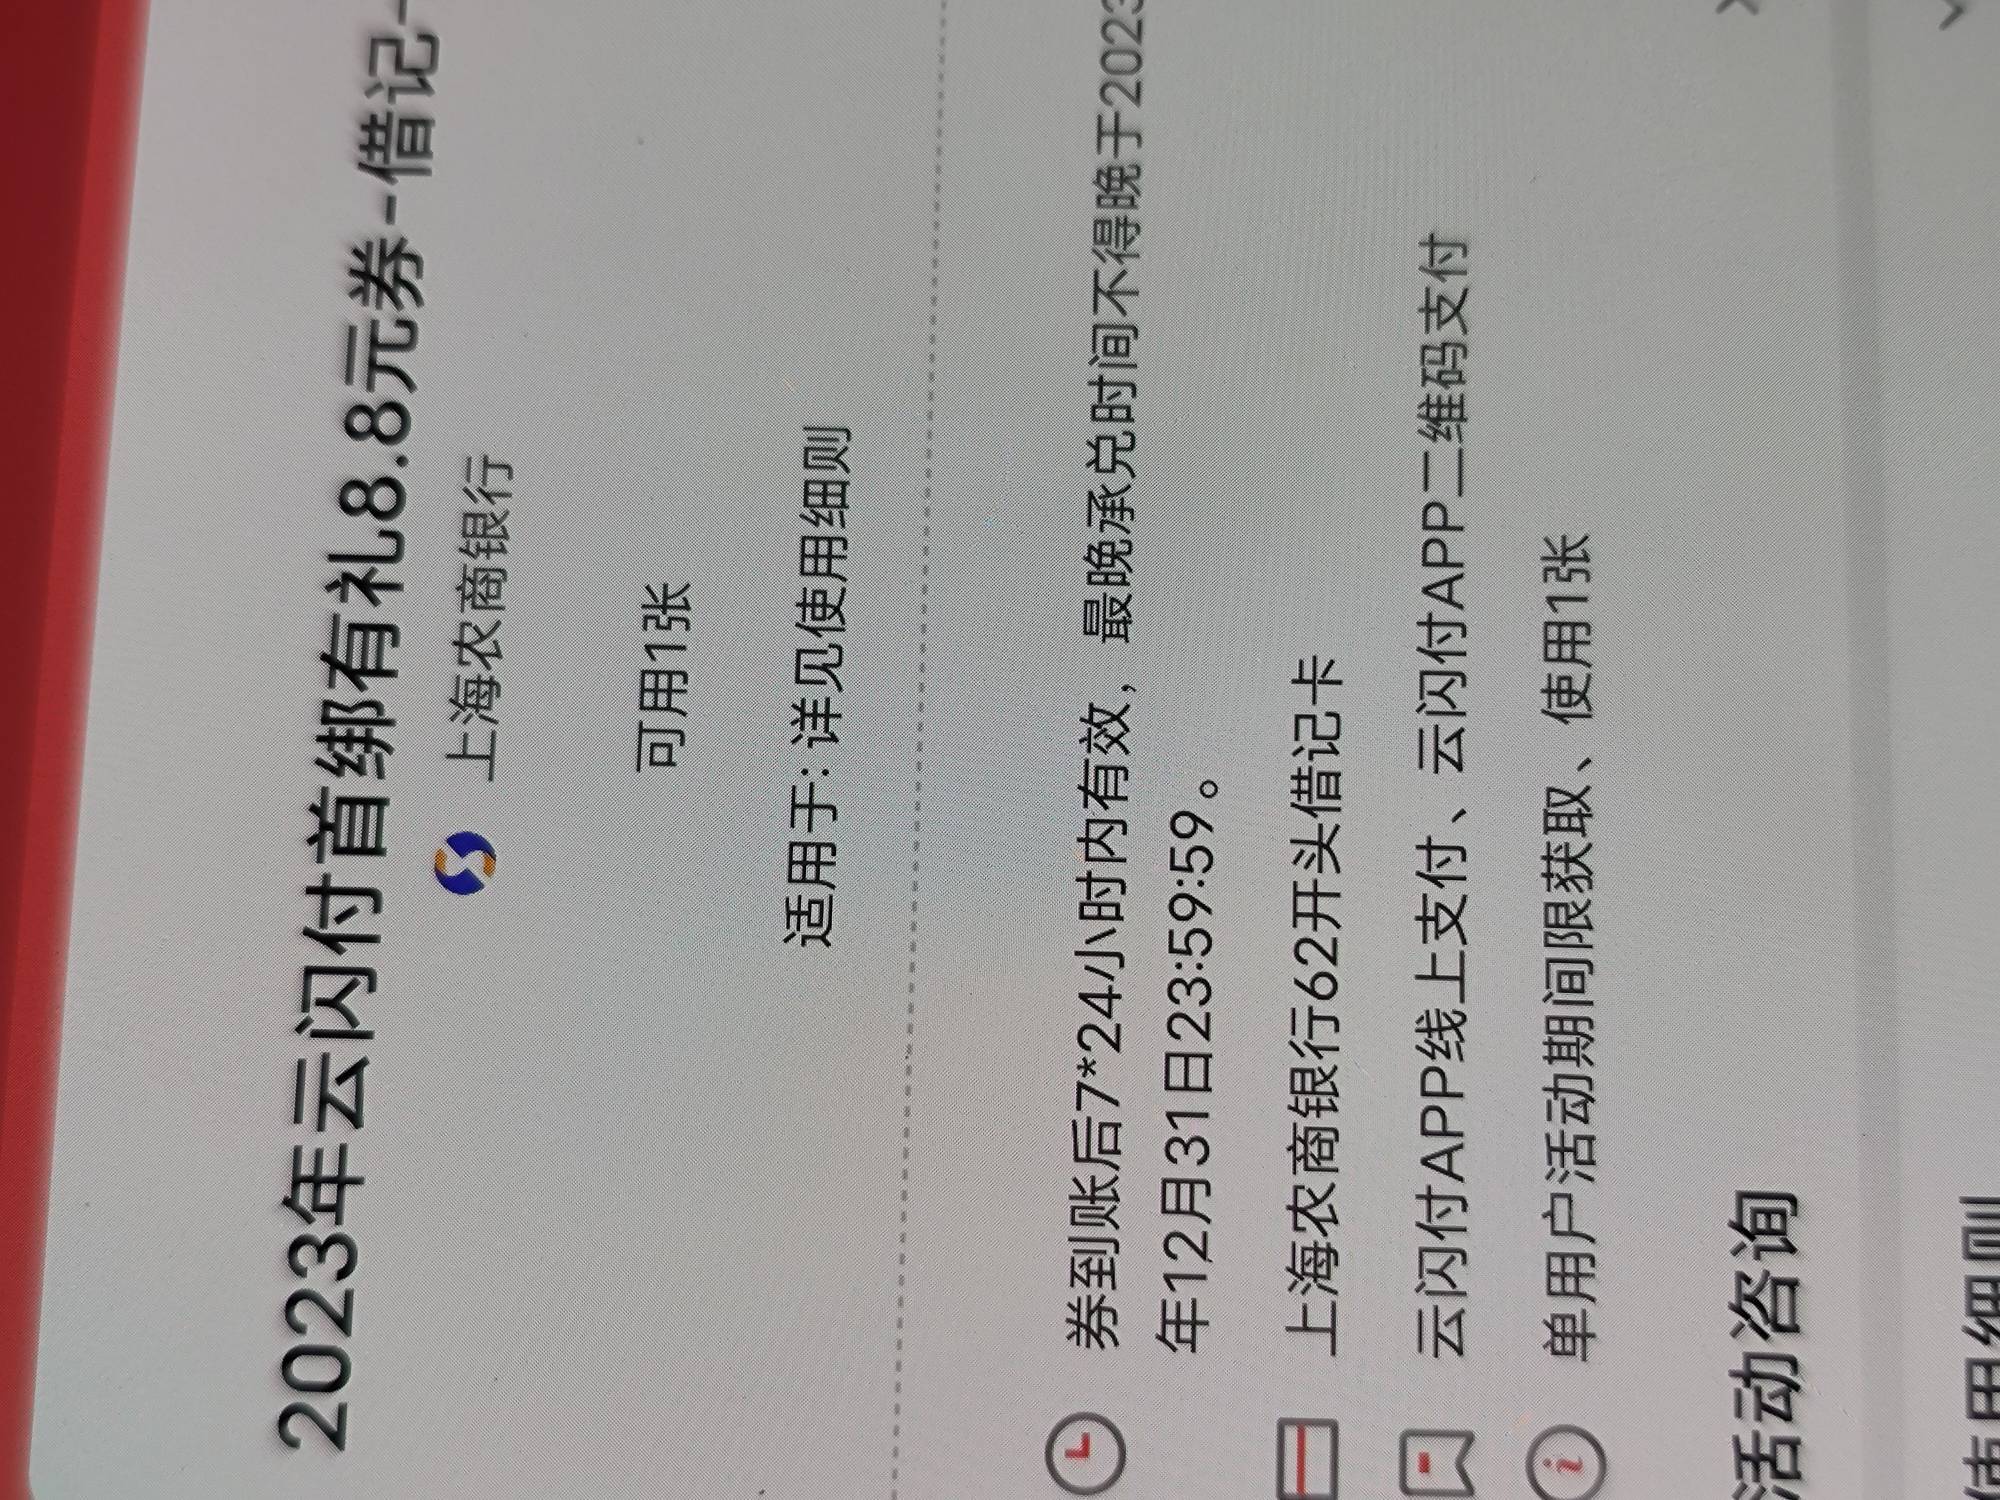 上海农商3*8.8=26.4已拿下，简单说下，1破定位注册登录，先绑一张卡
2绑完卡点账户管23 / 作者:雷锋哥哥哥 / 